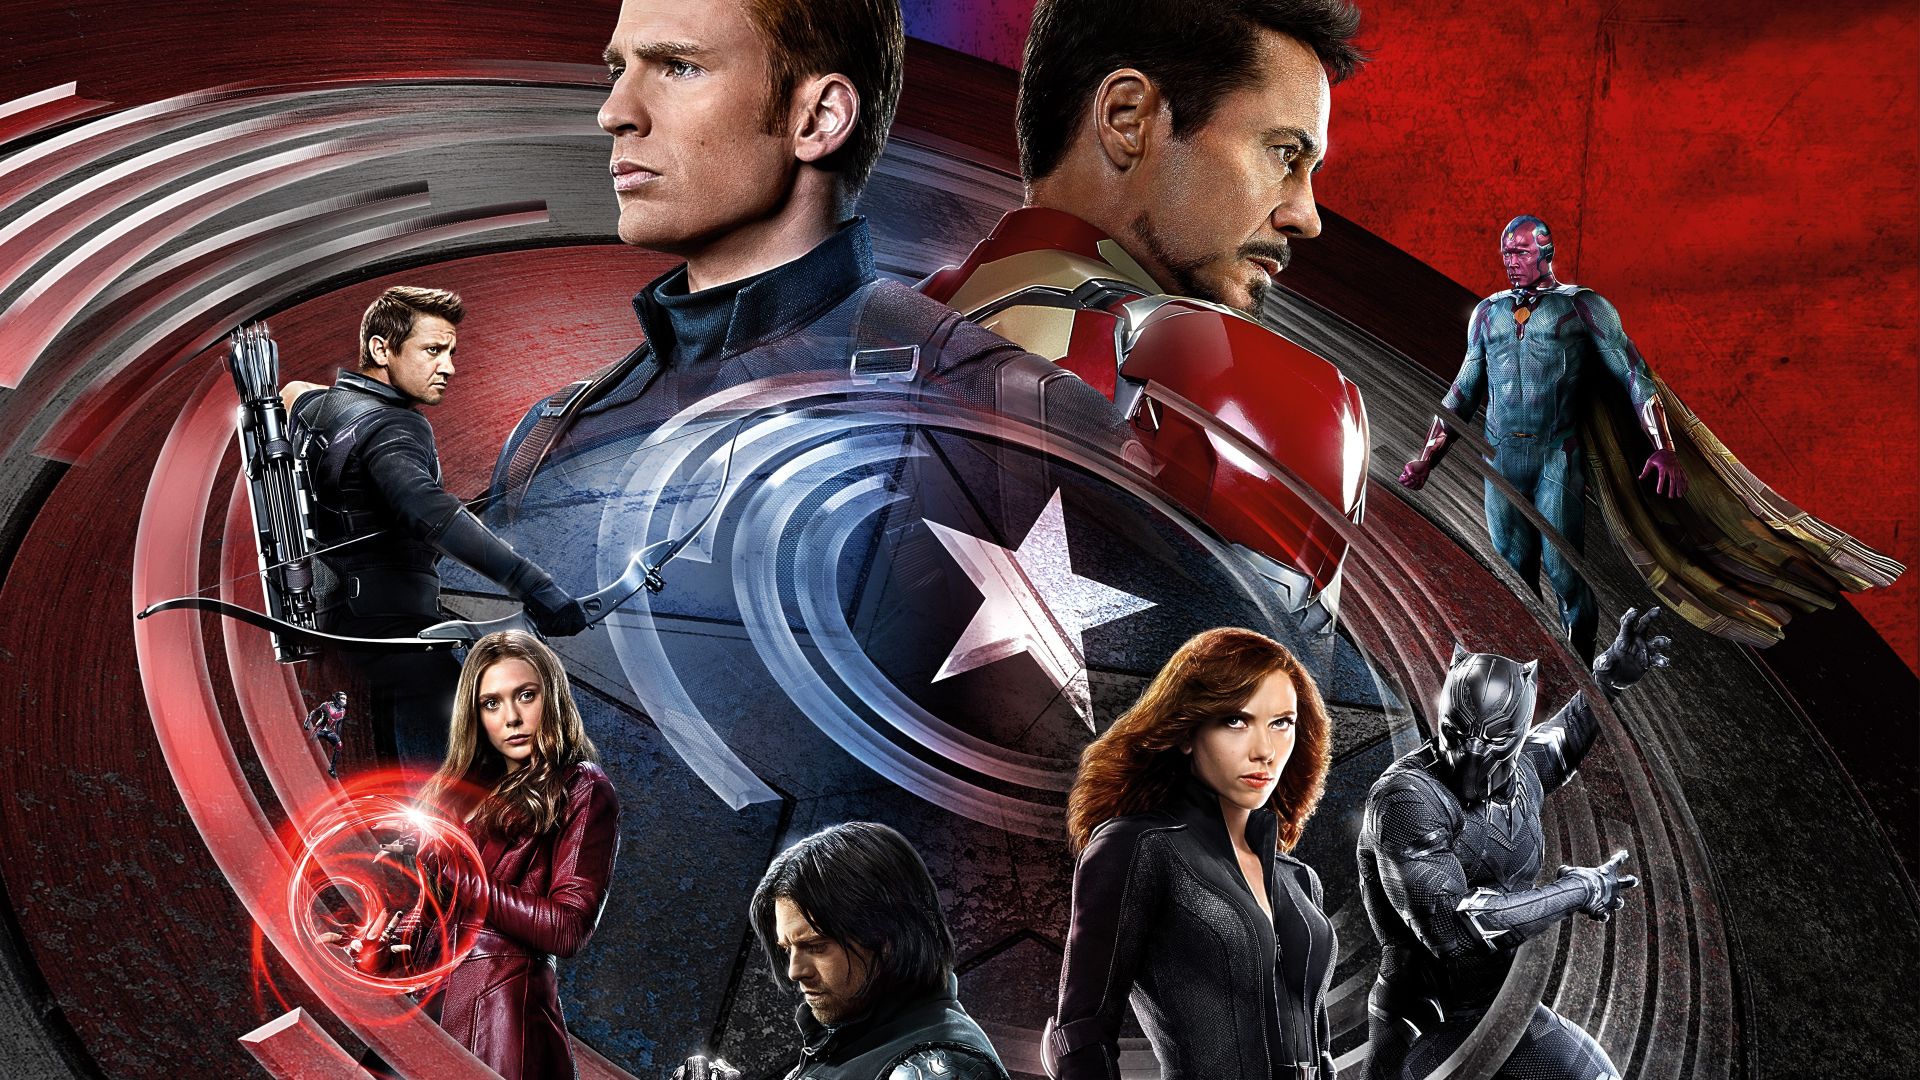 Первый мститель: Гражданская война, железный человек, Марвел, лучшие фильмы 2016, Captain America 3: civil war, Iron Man, Marvel, best movies of 2016 (horizontal)